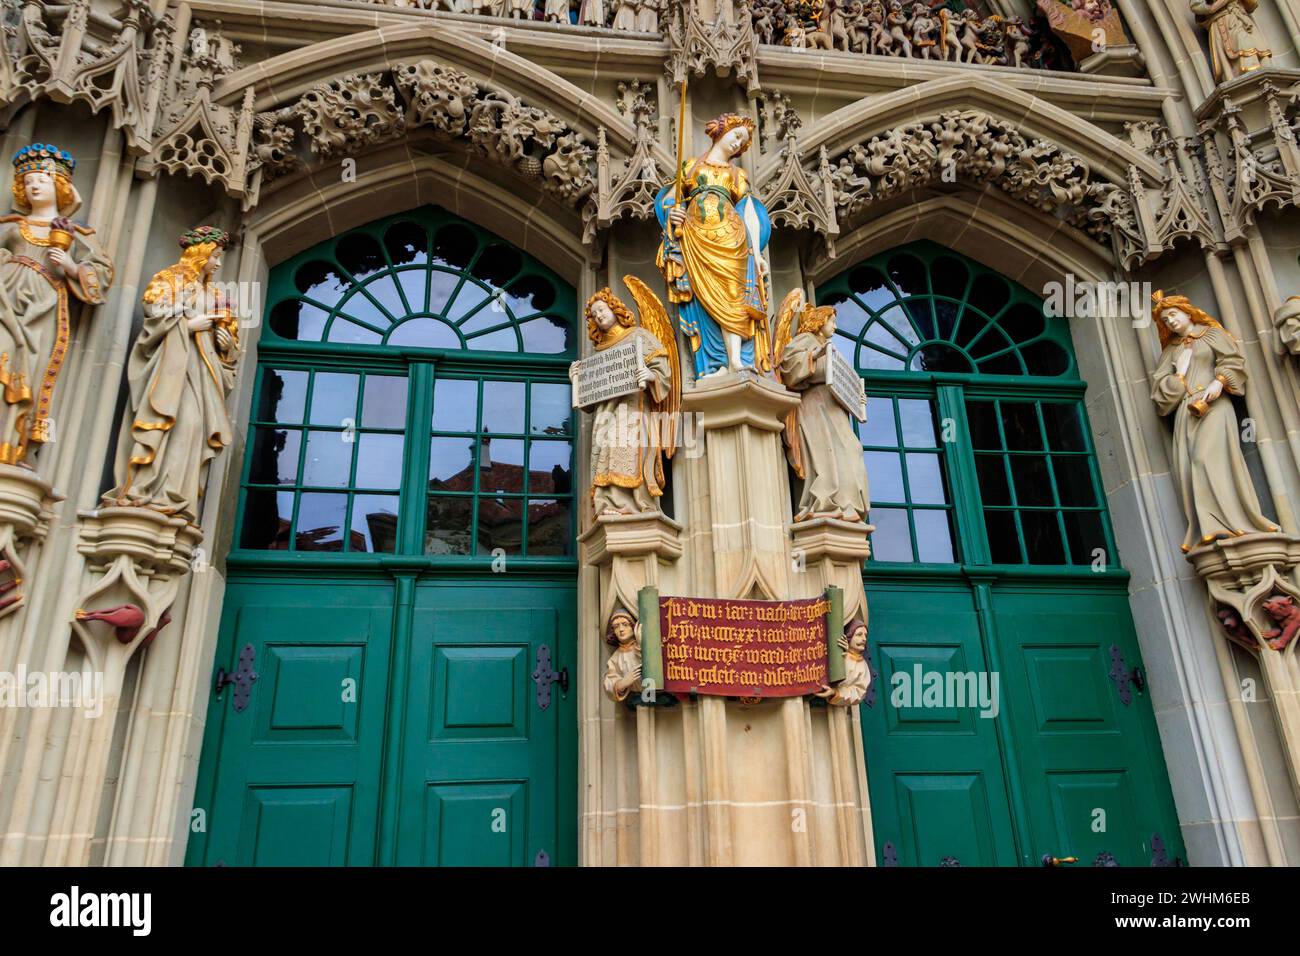 Dettagli del portale principale della cattedrale di Berna (Berna Minster), Svizzera Foto Stock